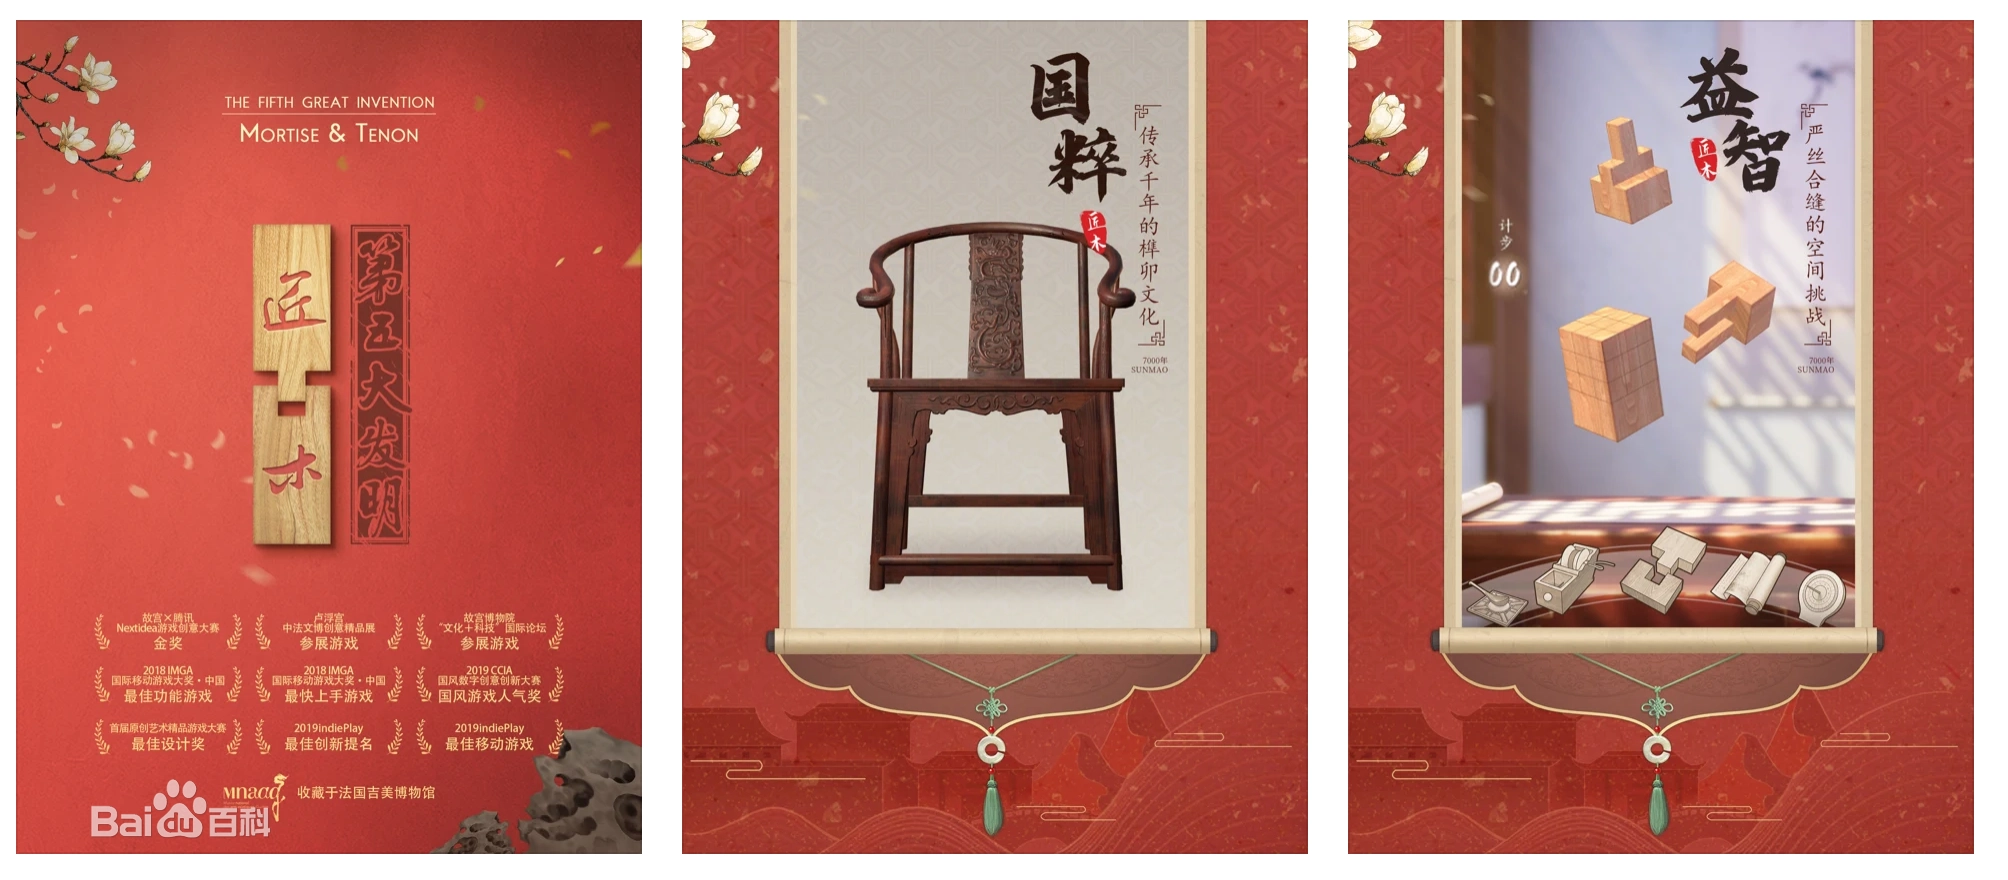 中国榫卯为主题的创意游戏-匠木